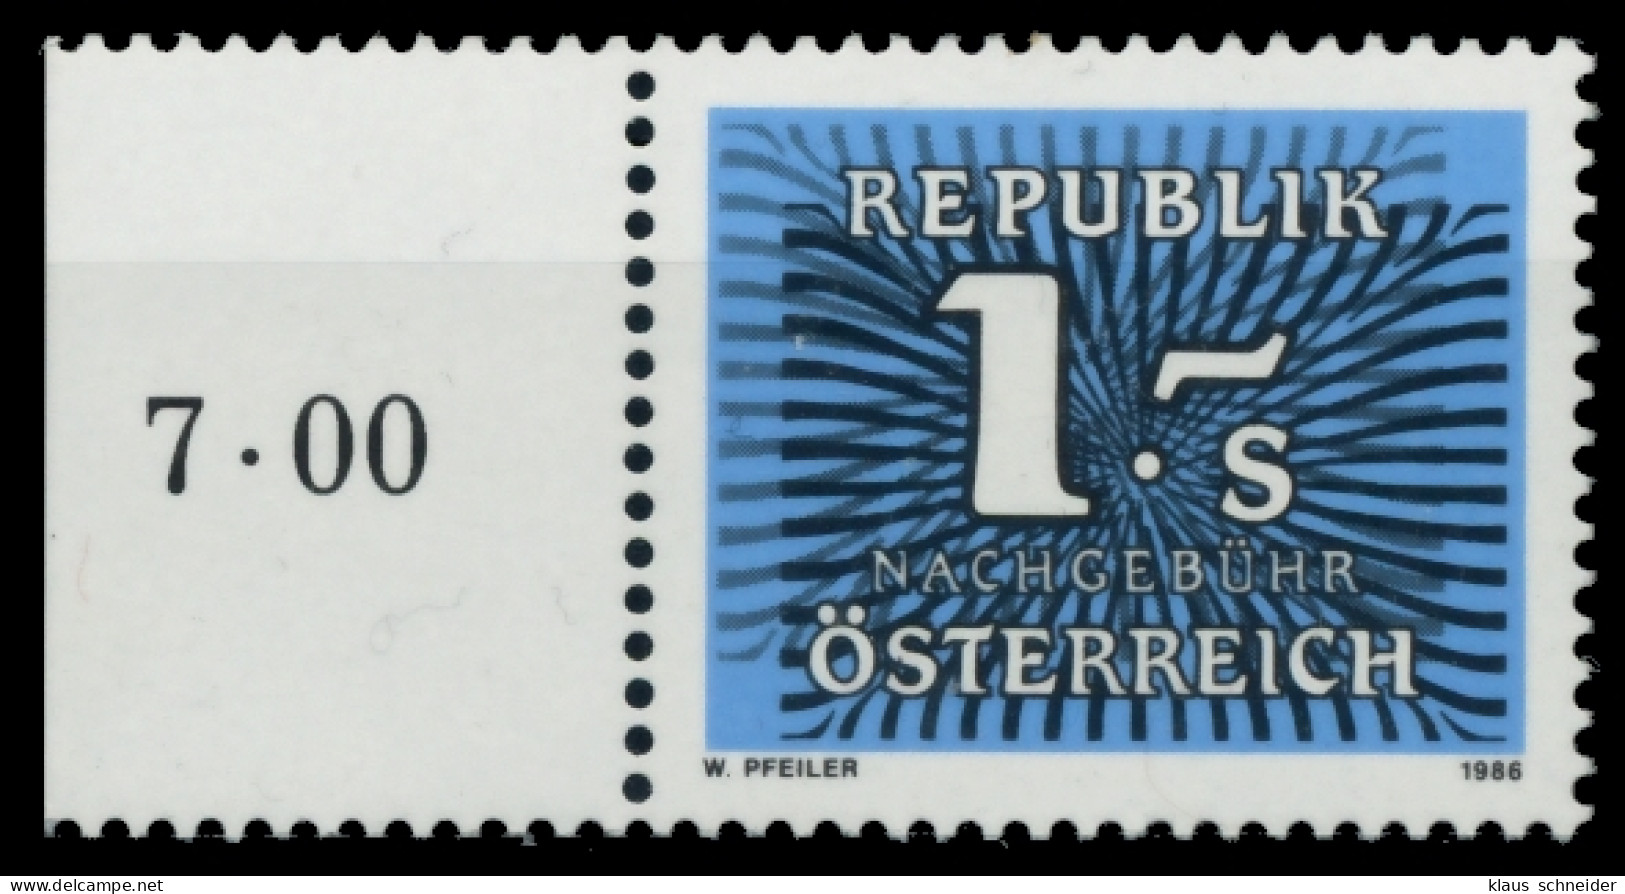 ÖSTERREICH PORTOMARKEN 1985 89 Nr 262 Postfrisch ORA X6F21AE - Portomarken